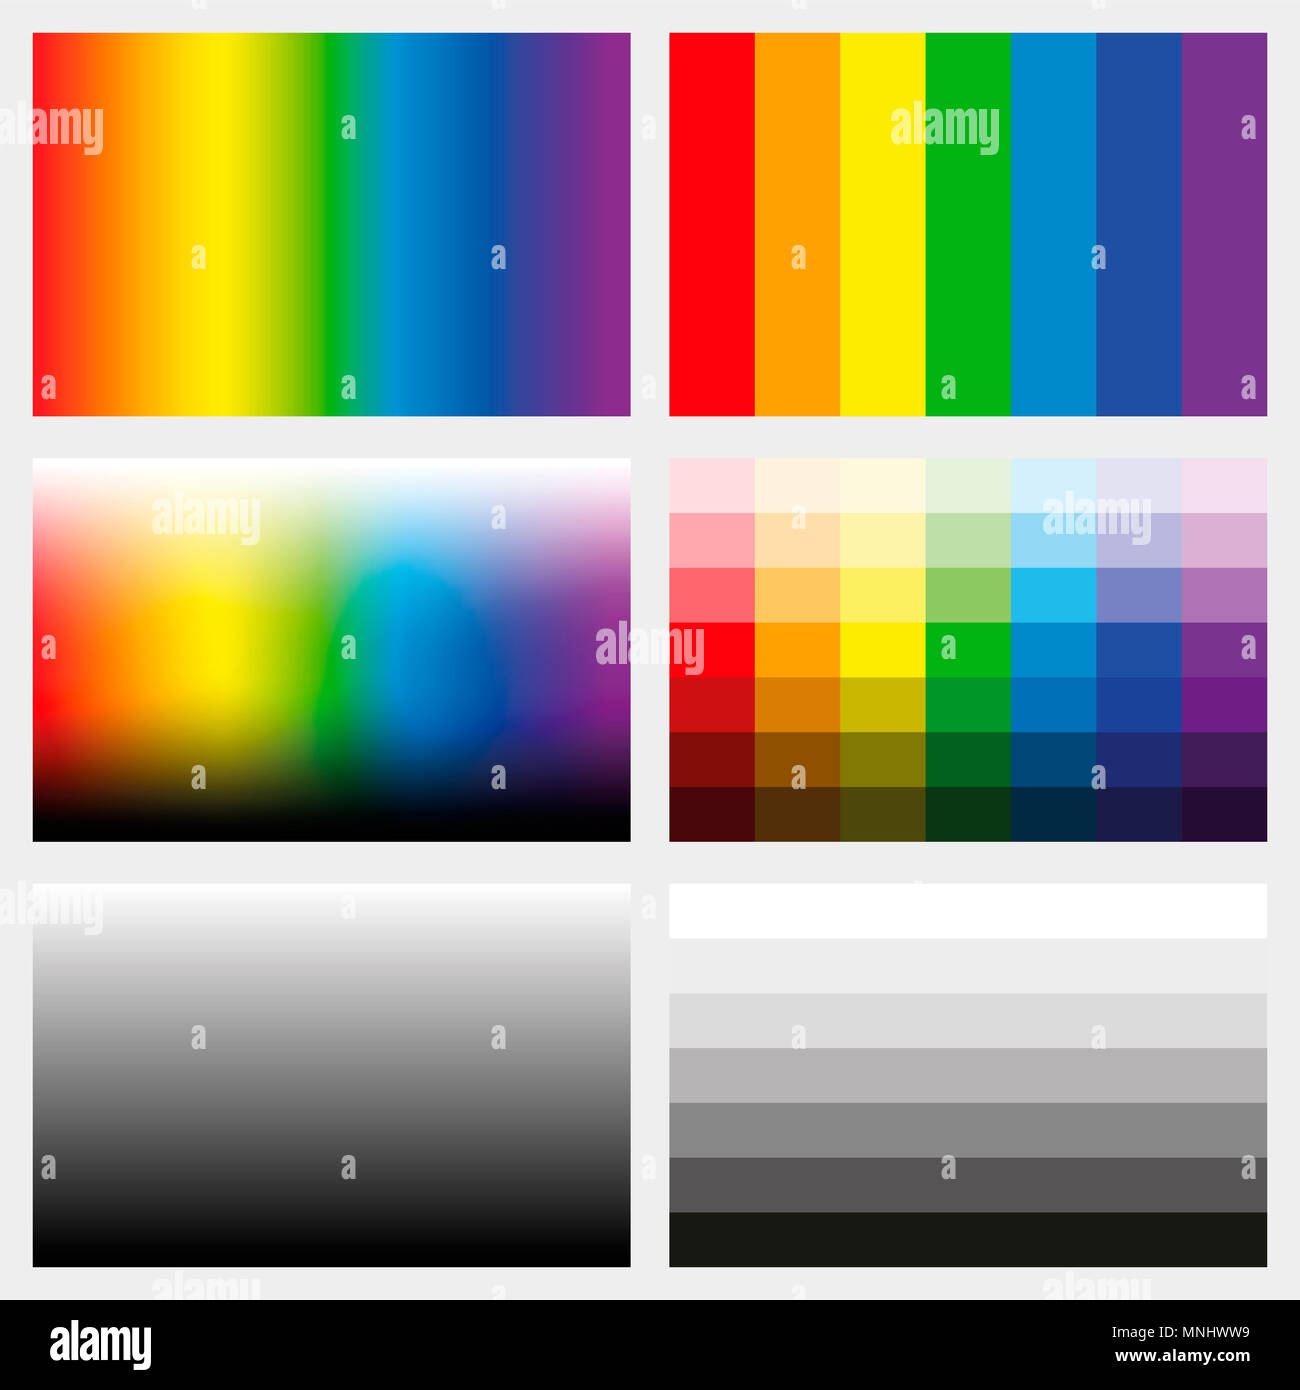 Fichas de sombra. Conjunto de gradientes de color, escala de grises y espectros de saturación en diferentes gradaciones de claro a oscuro - herramienta de trabajo para el diseño gráfico. Foto de stock